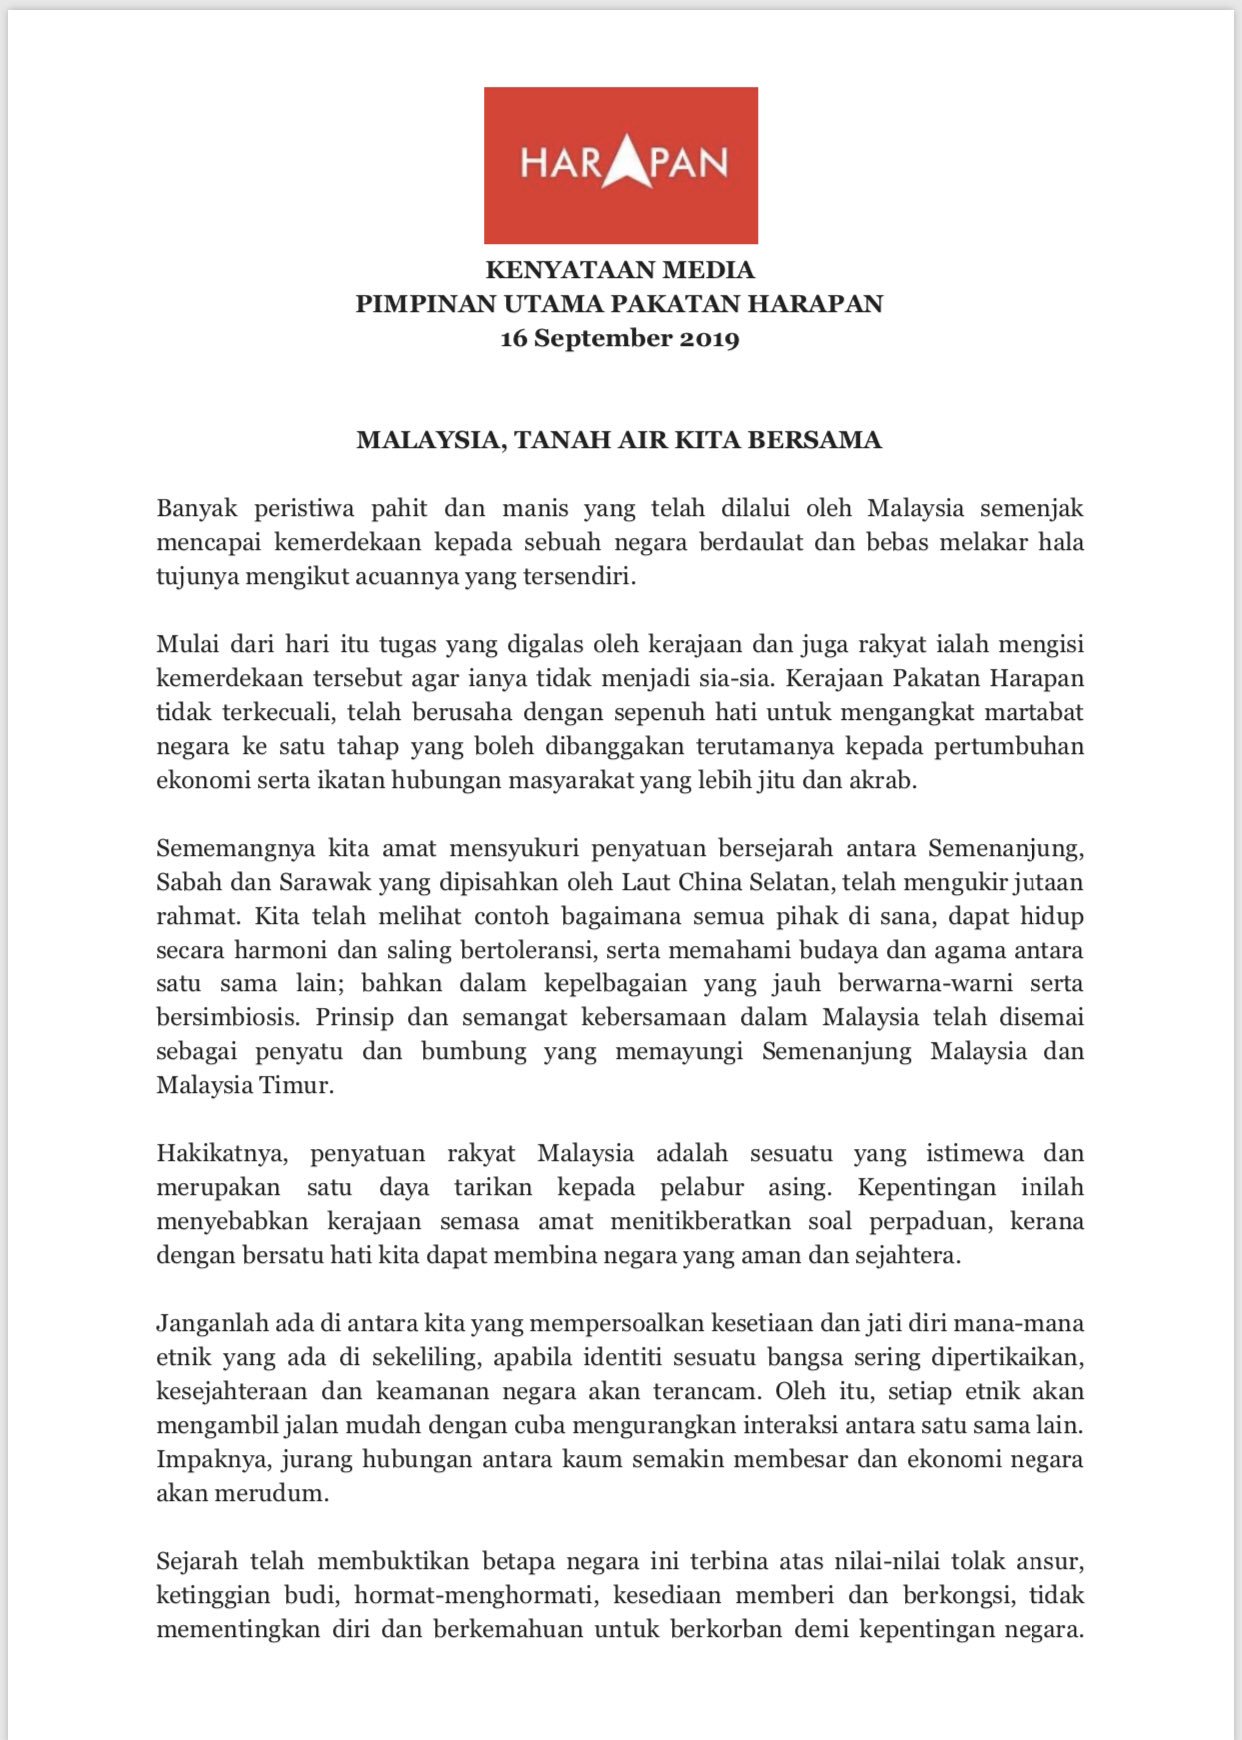 Norman Goh On Twitter Kenyataan Bersama Pimpinan Tinggi Pakatan Harapan Malaysia Tanah Air Kita Https T Co D5dapv6lyk Twitter